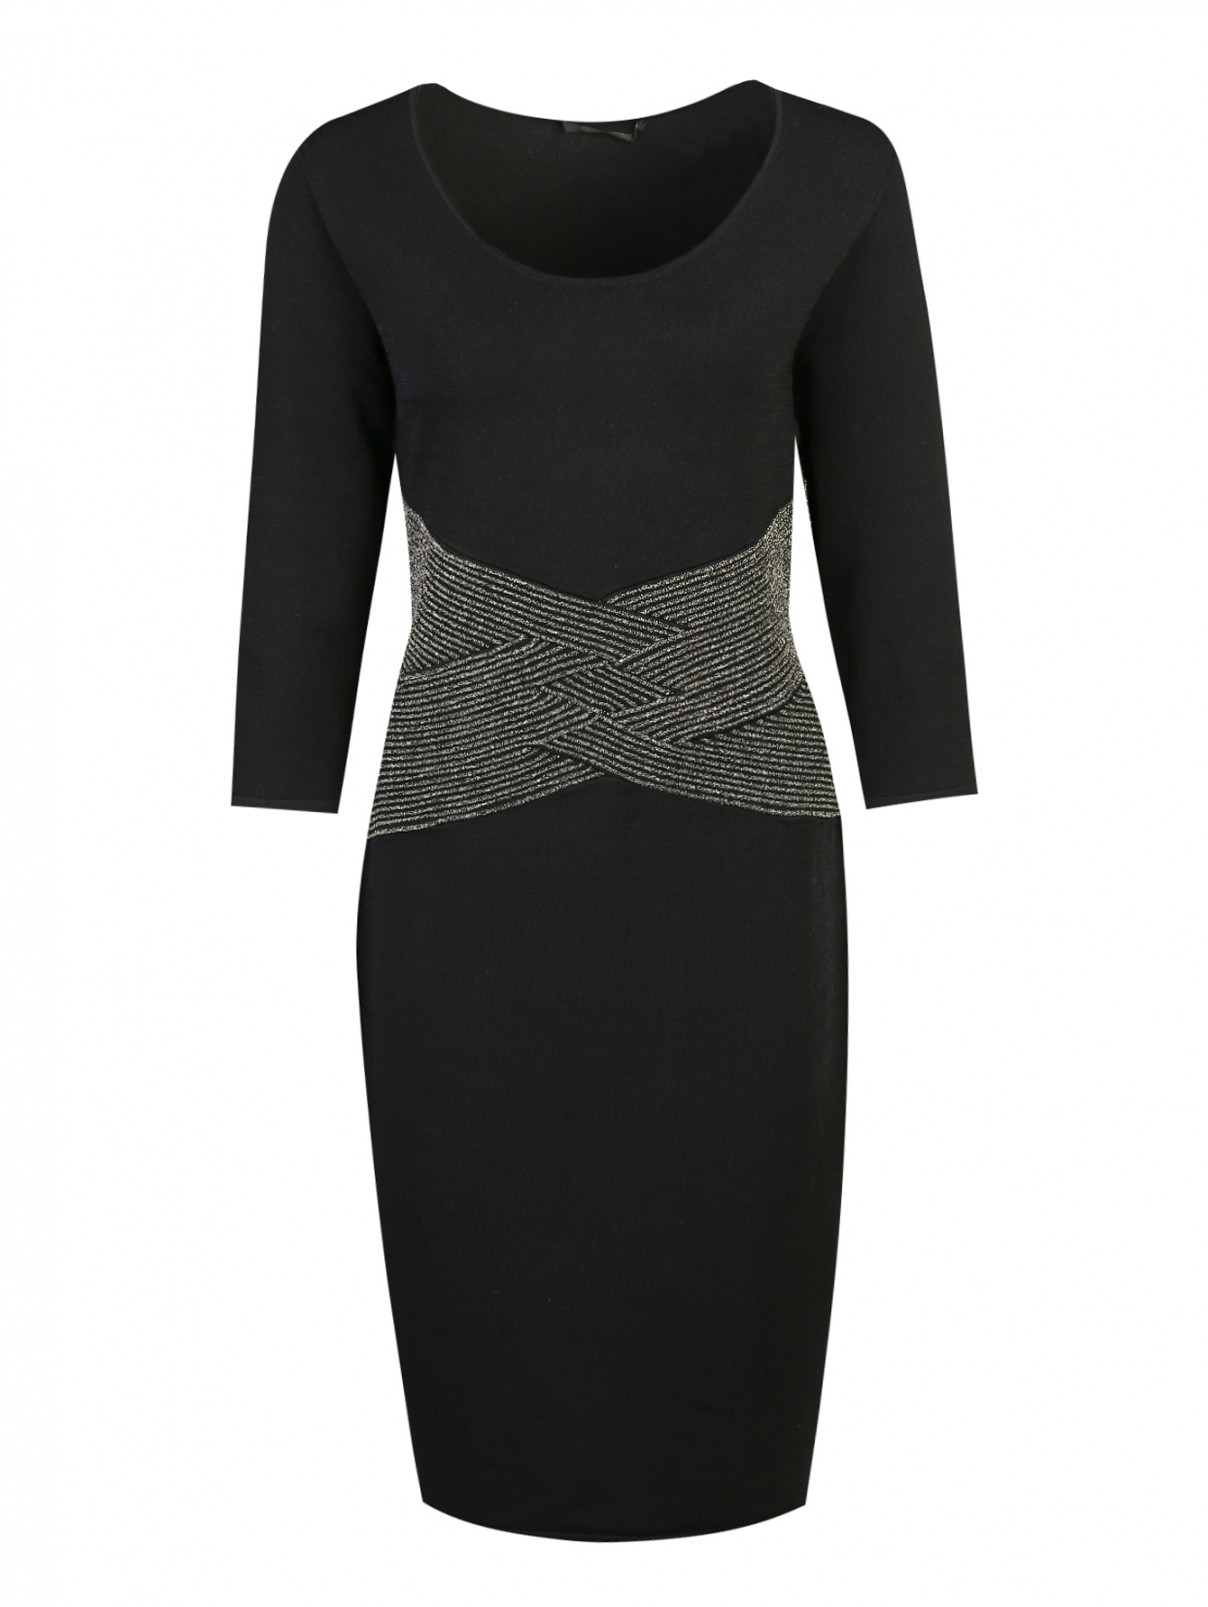 Платье трикотажное с отделкой люрексом на поясе Marina Rinaldi  –  Общий вид  – Цвет:  Черный